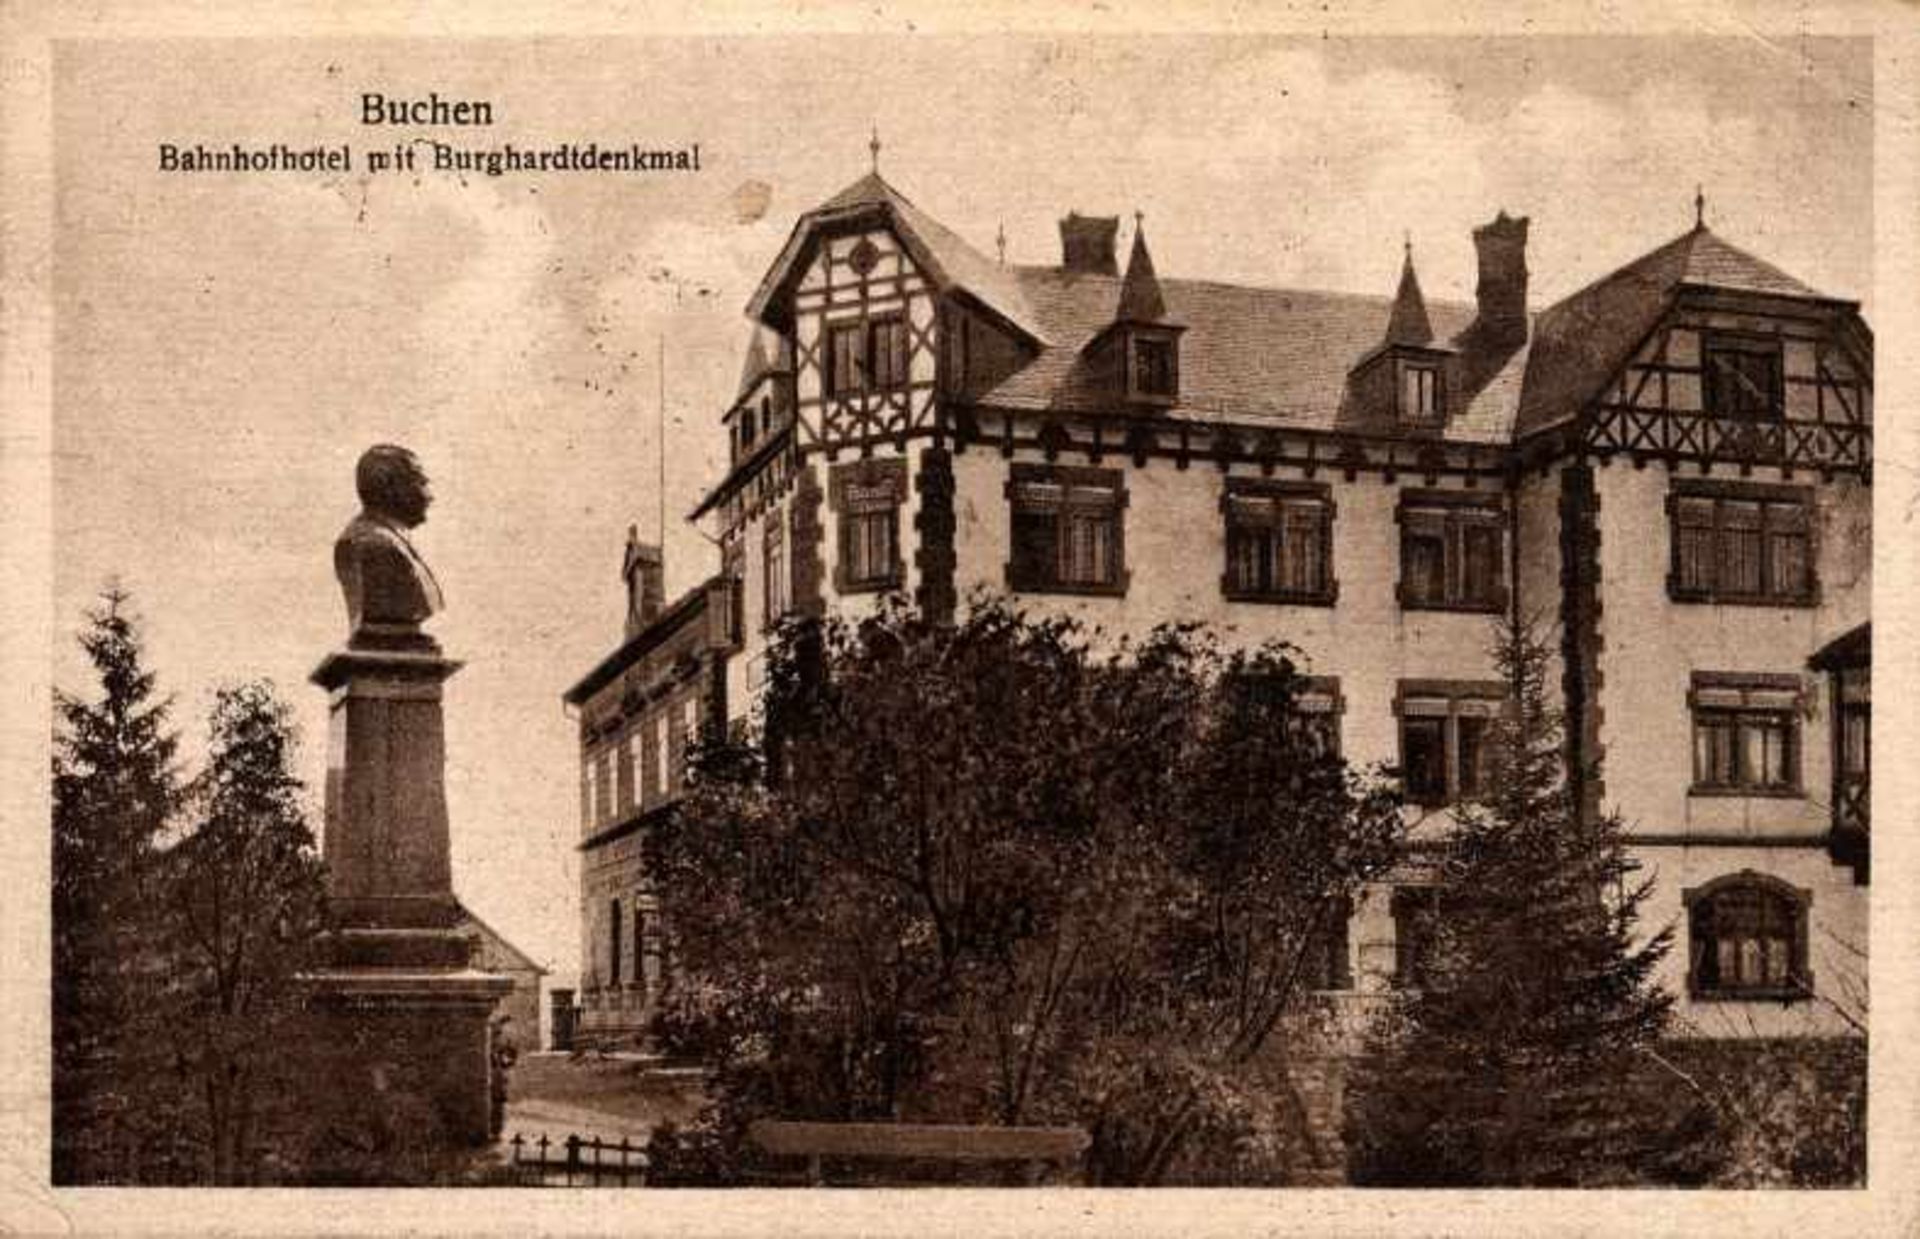 1 Postkarte, kleines Format, s/w, Buchen - Bahnhofhotel mit Burghardtdenkmal, mit Bm und